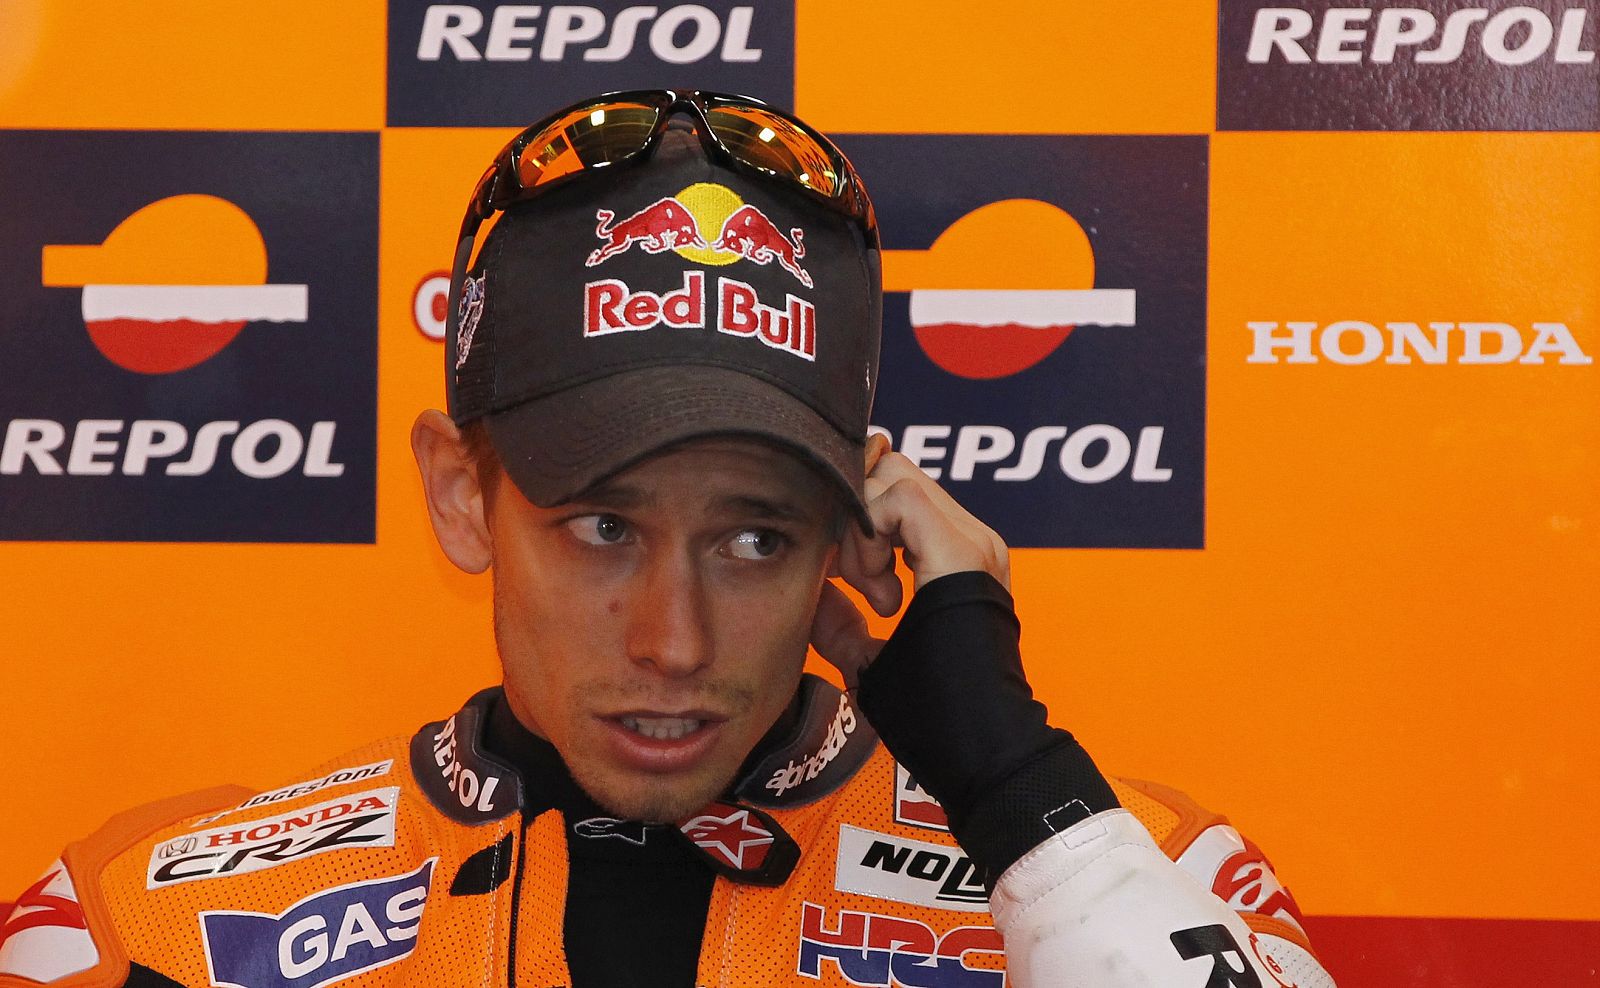 Stoner llega a Malasia como nuevo campeón de la categoría de MotoGP.